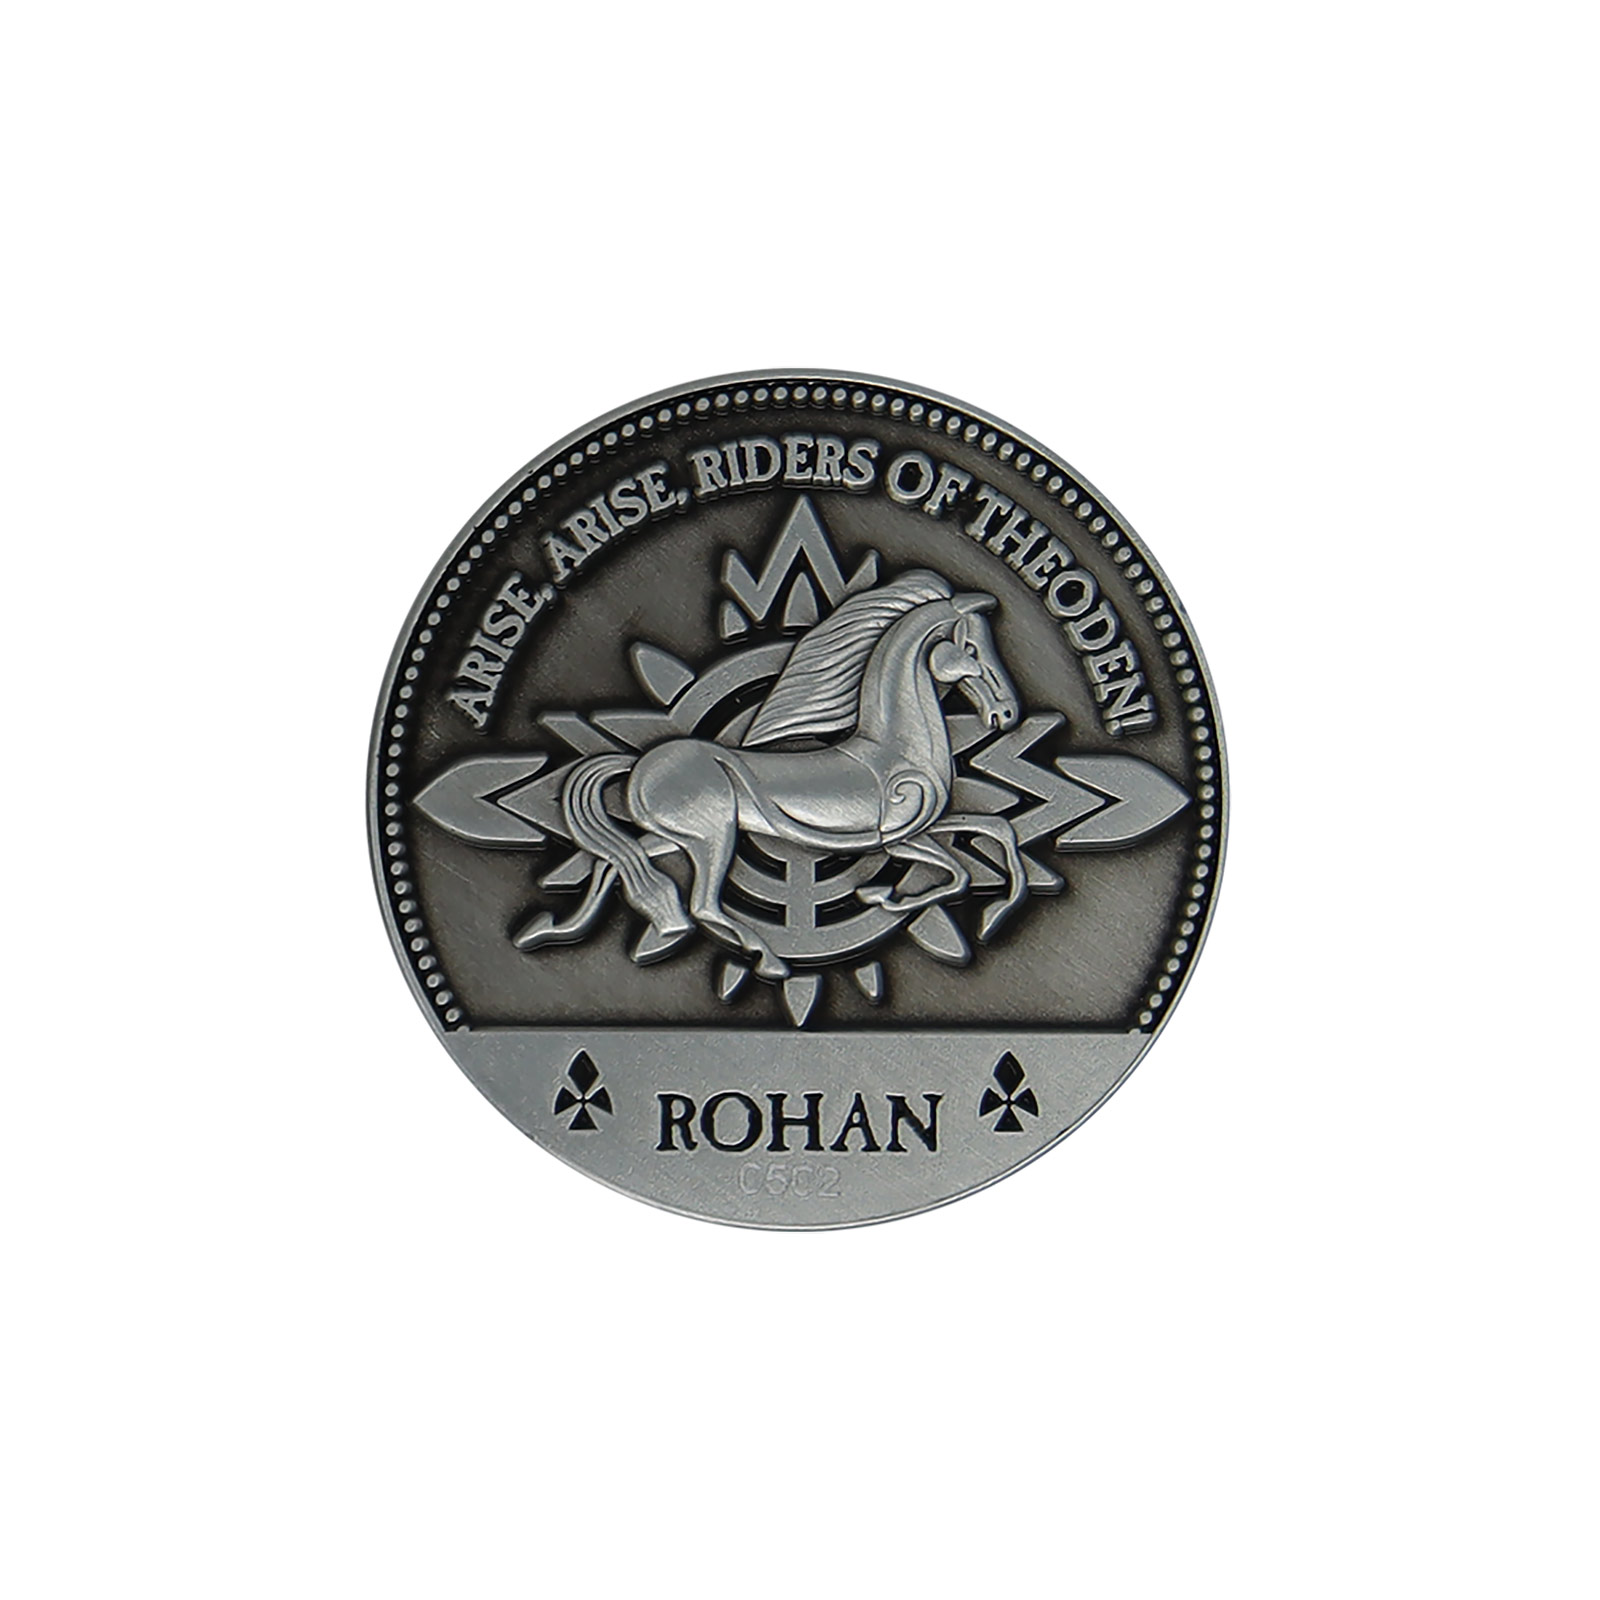 Herr der Ringe - Rohan Sammlermünze